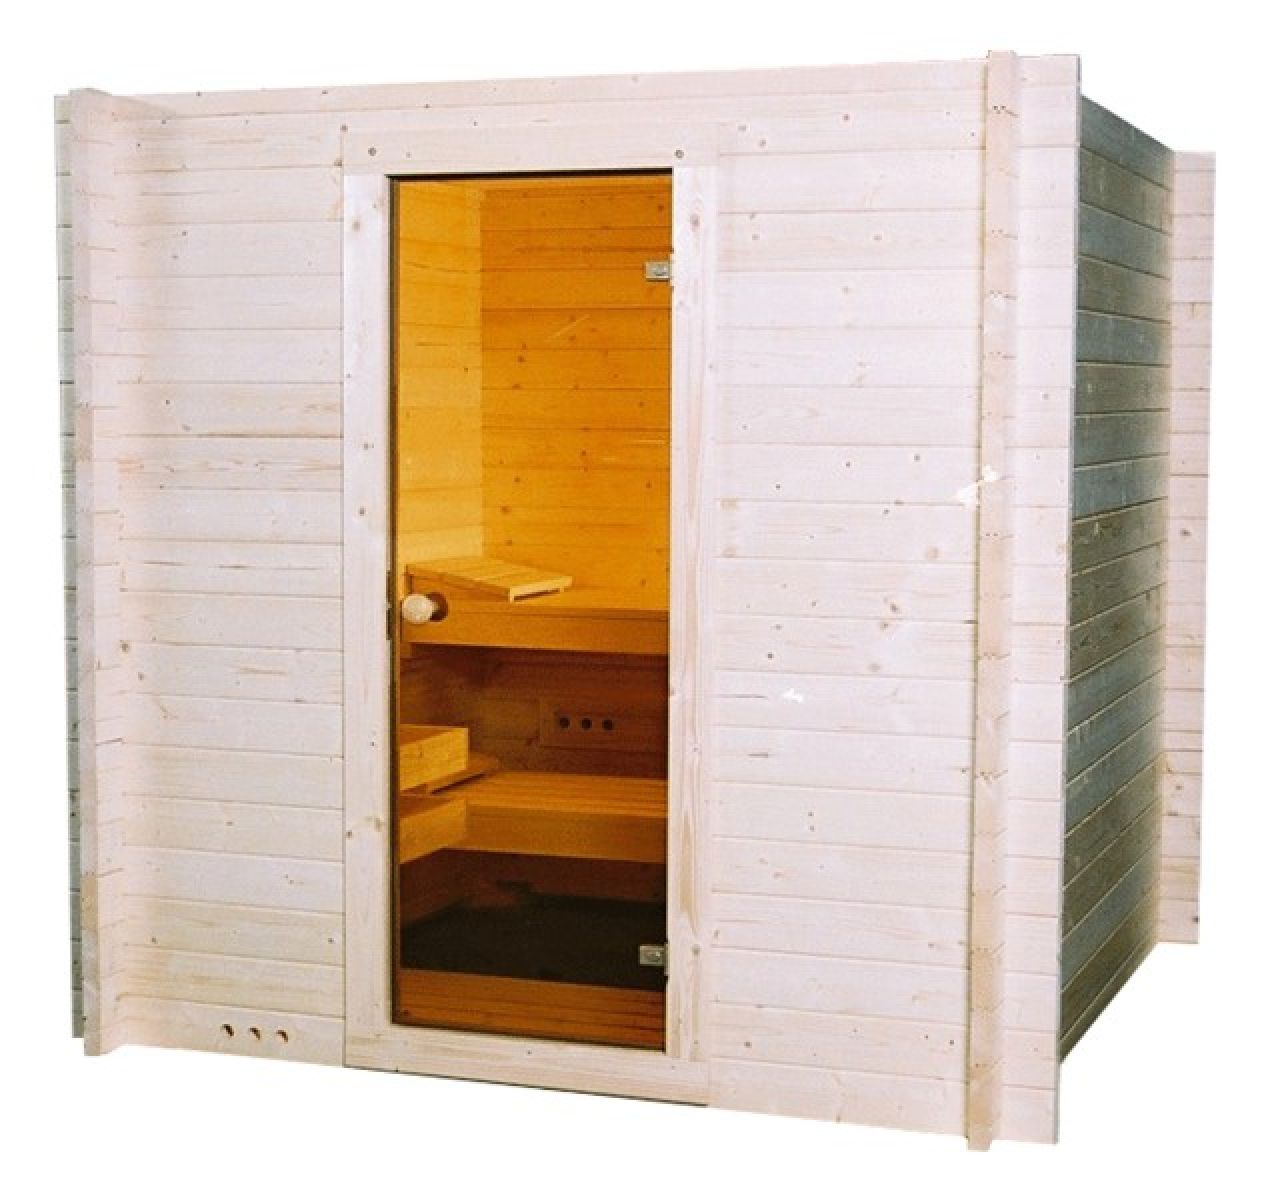 Binnensauna Interflex - 205x205 cm (Sauna)